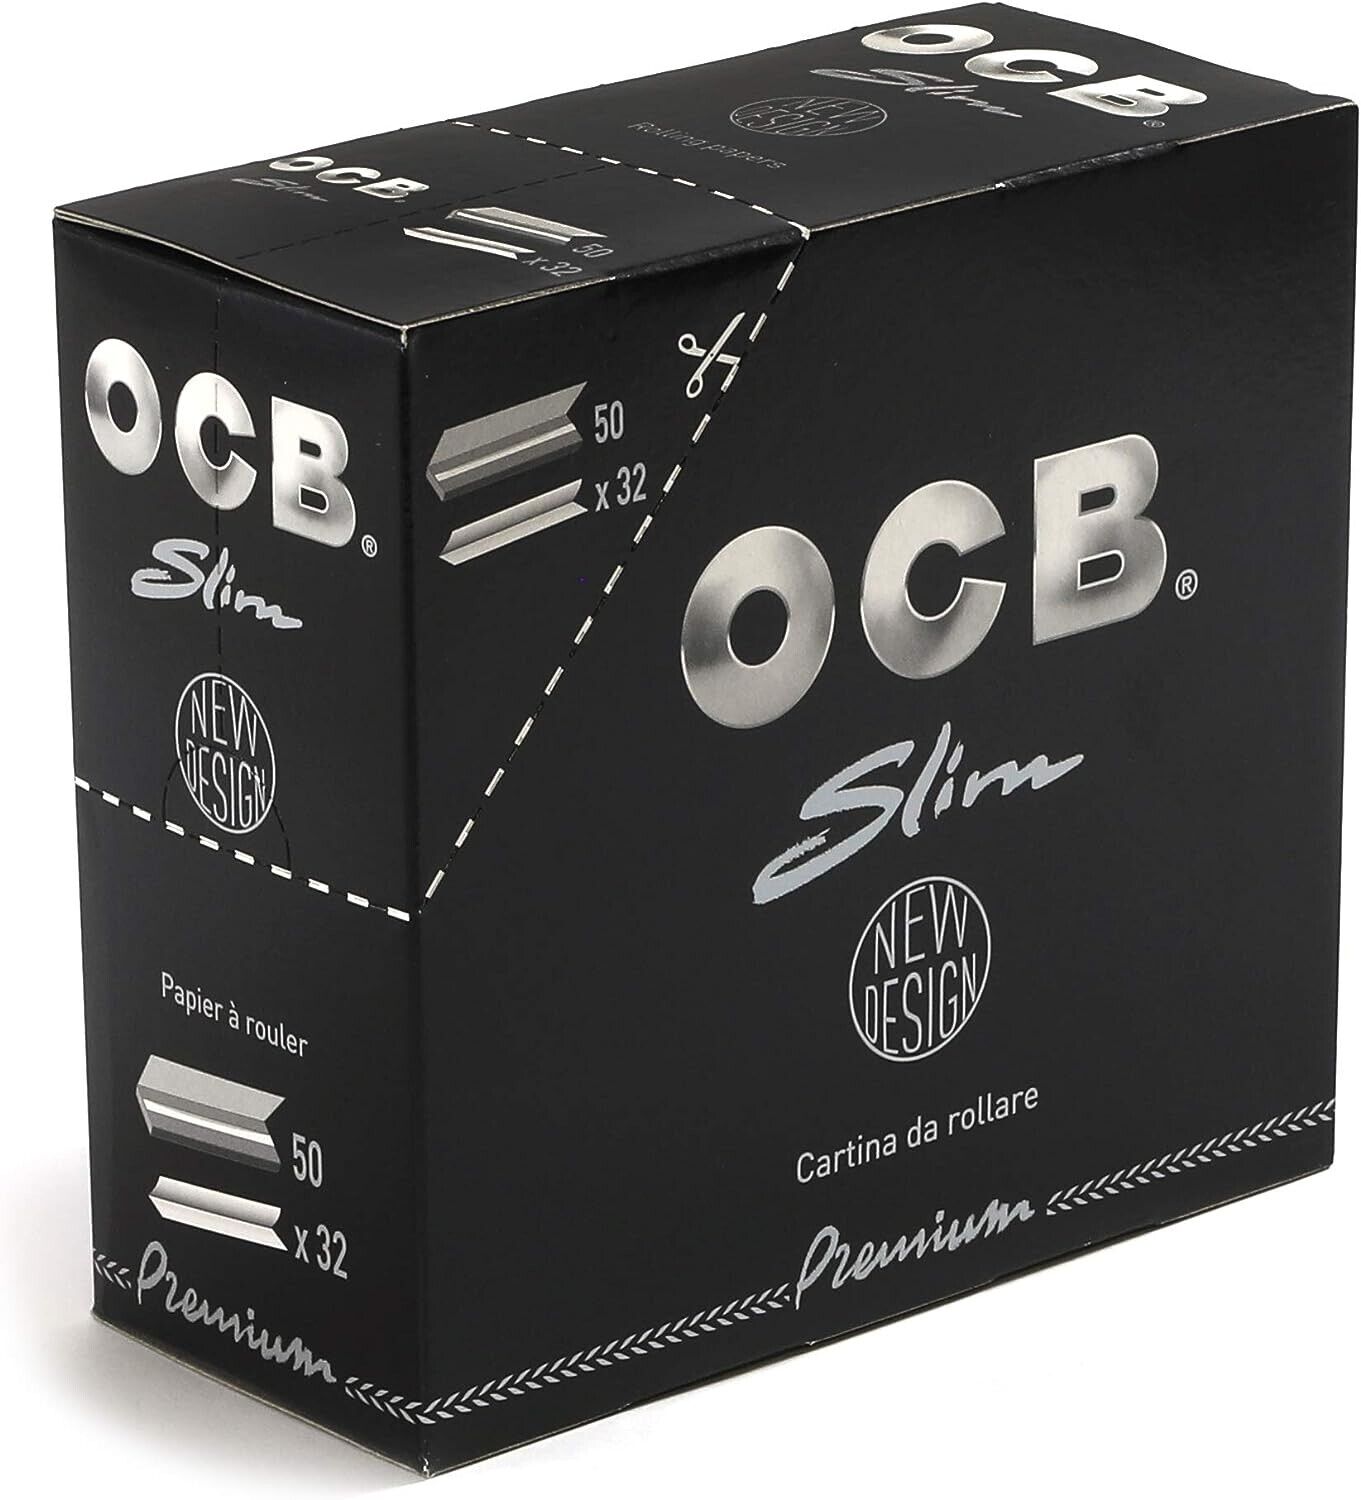 Feuilles à rouler Slim Premium noire BIO, OCB (x32)  La Belle Vie :  Courses en Ligne - Livraison à Domicile